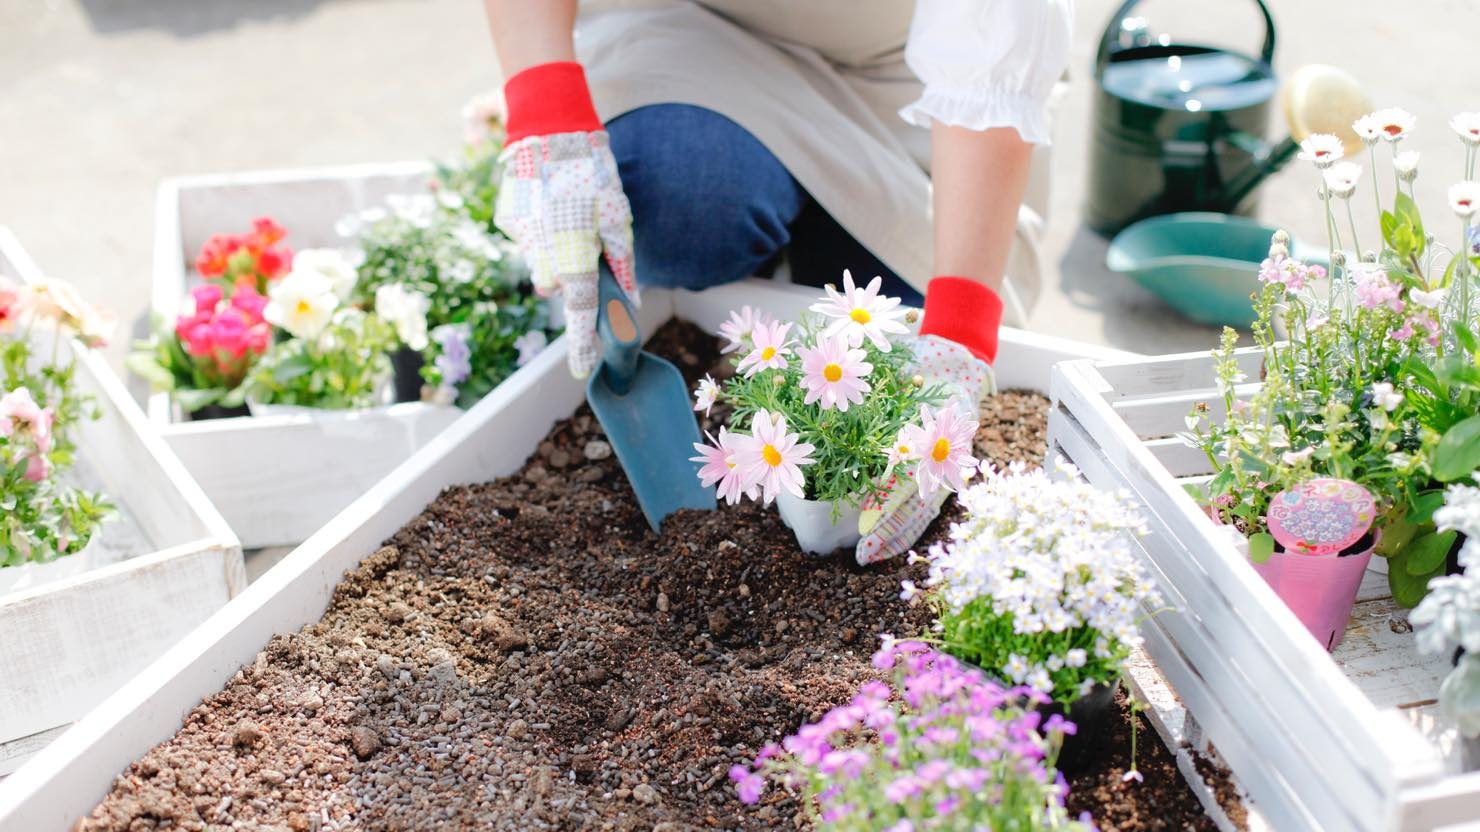 ホームズ おしゃれなミニ花壇を自宅で作ろう ミニ花壇におすすめの花と準備するもの 暮らし方から物件探し